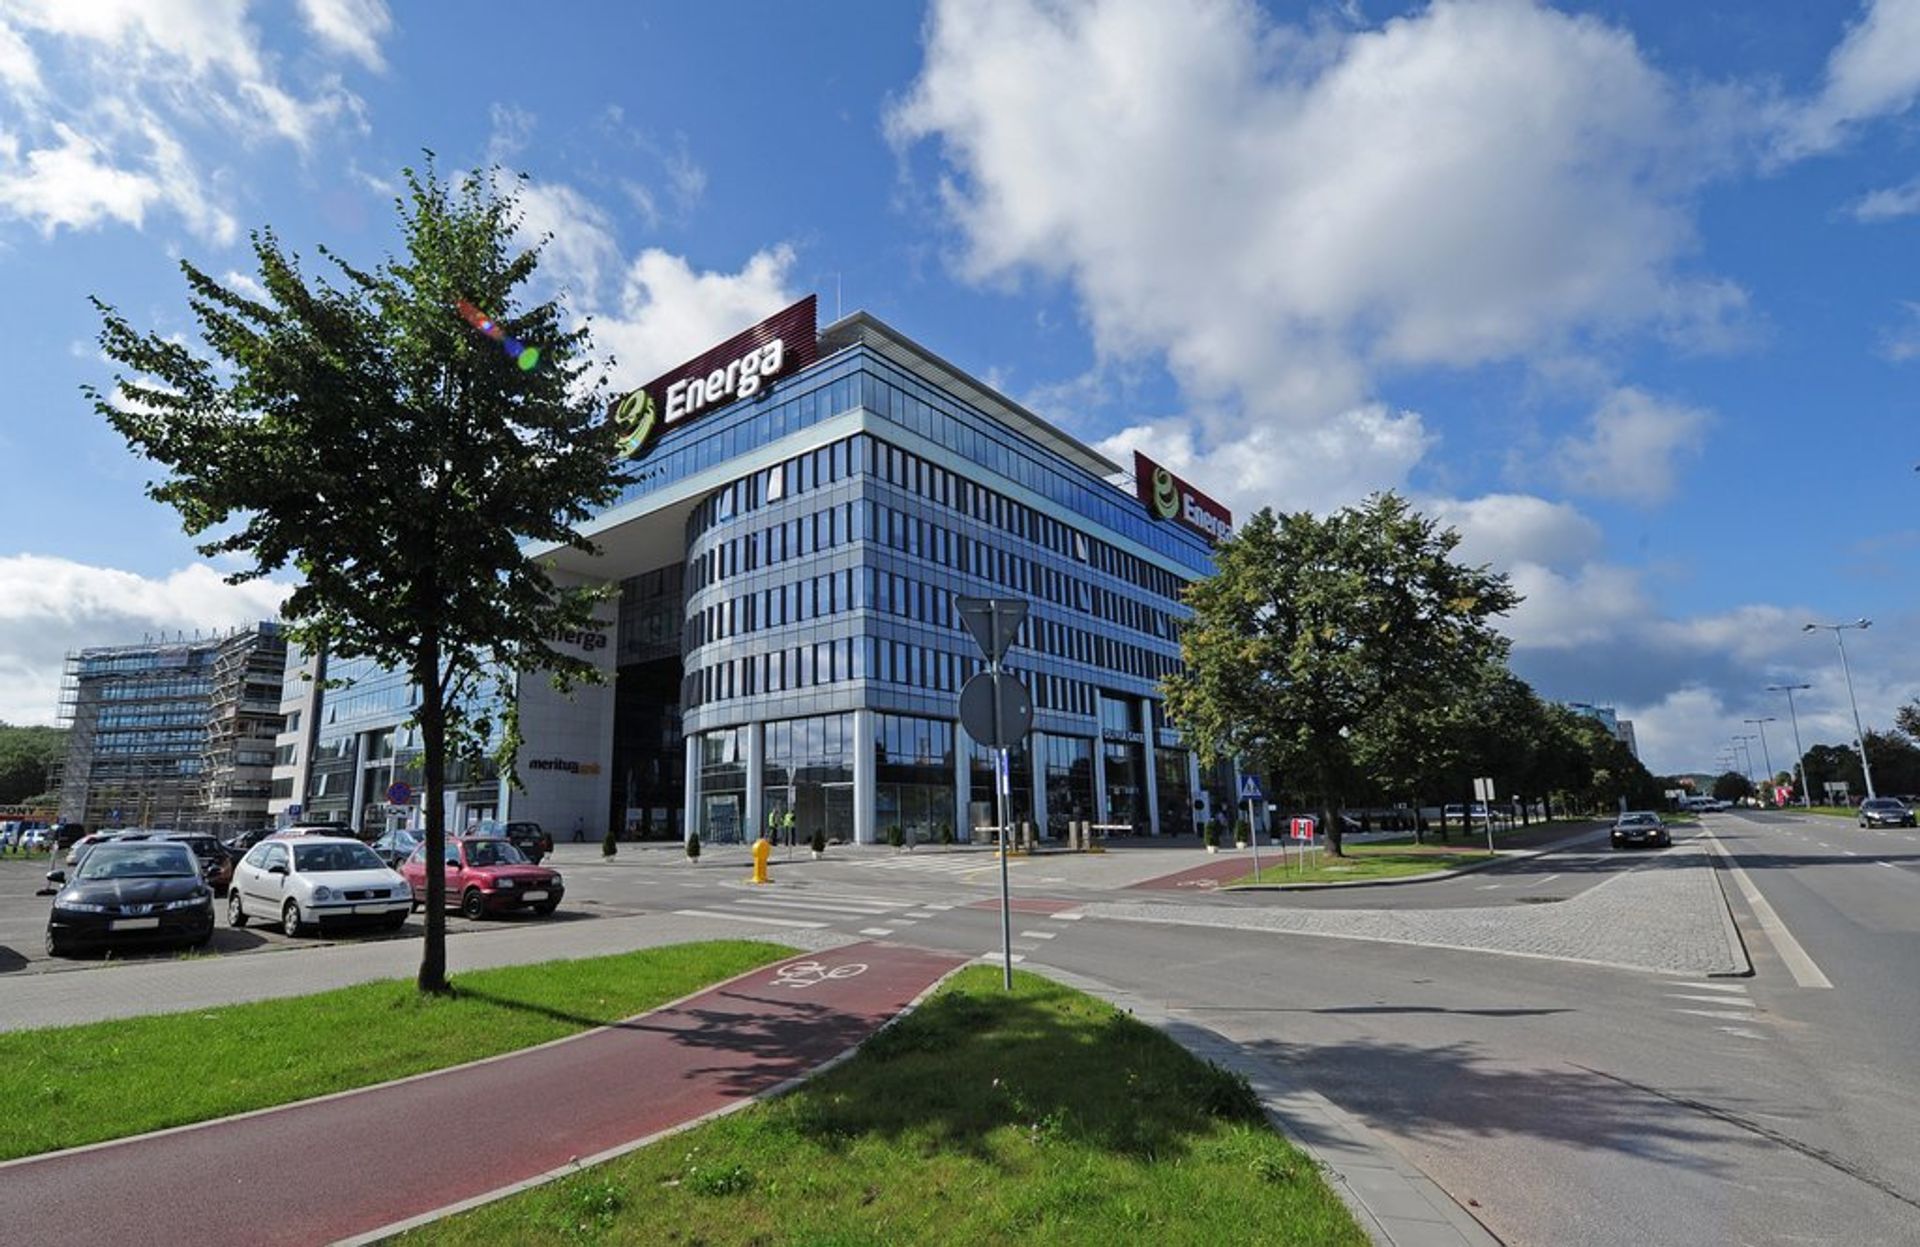  Grupa Amazon otworzyła Centrum Rozwoju Technologii w Gdańsku